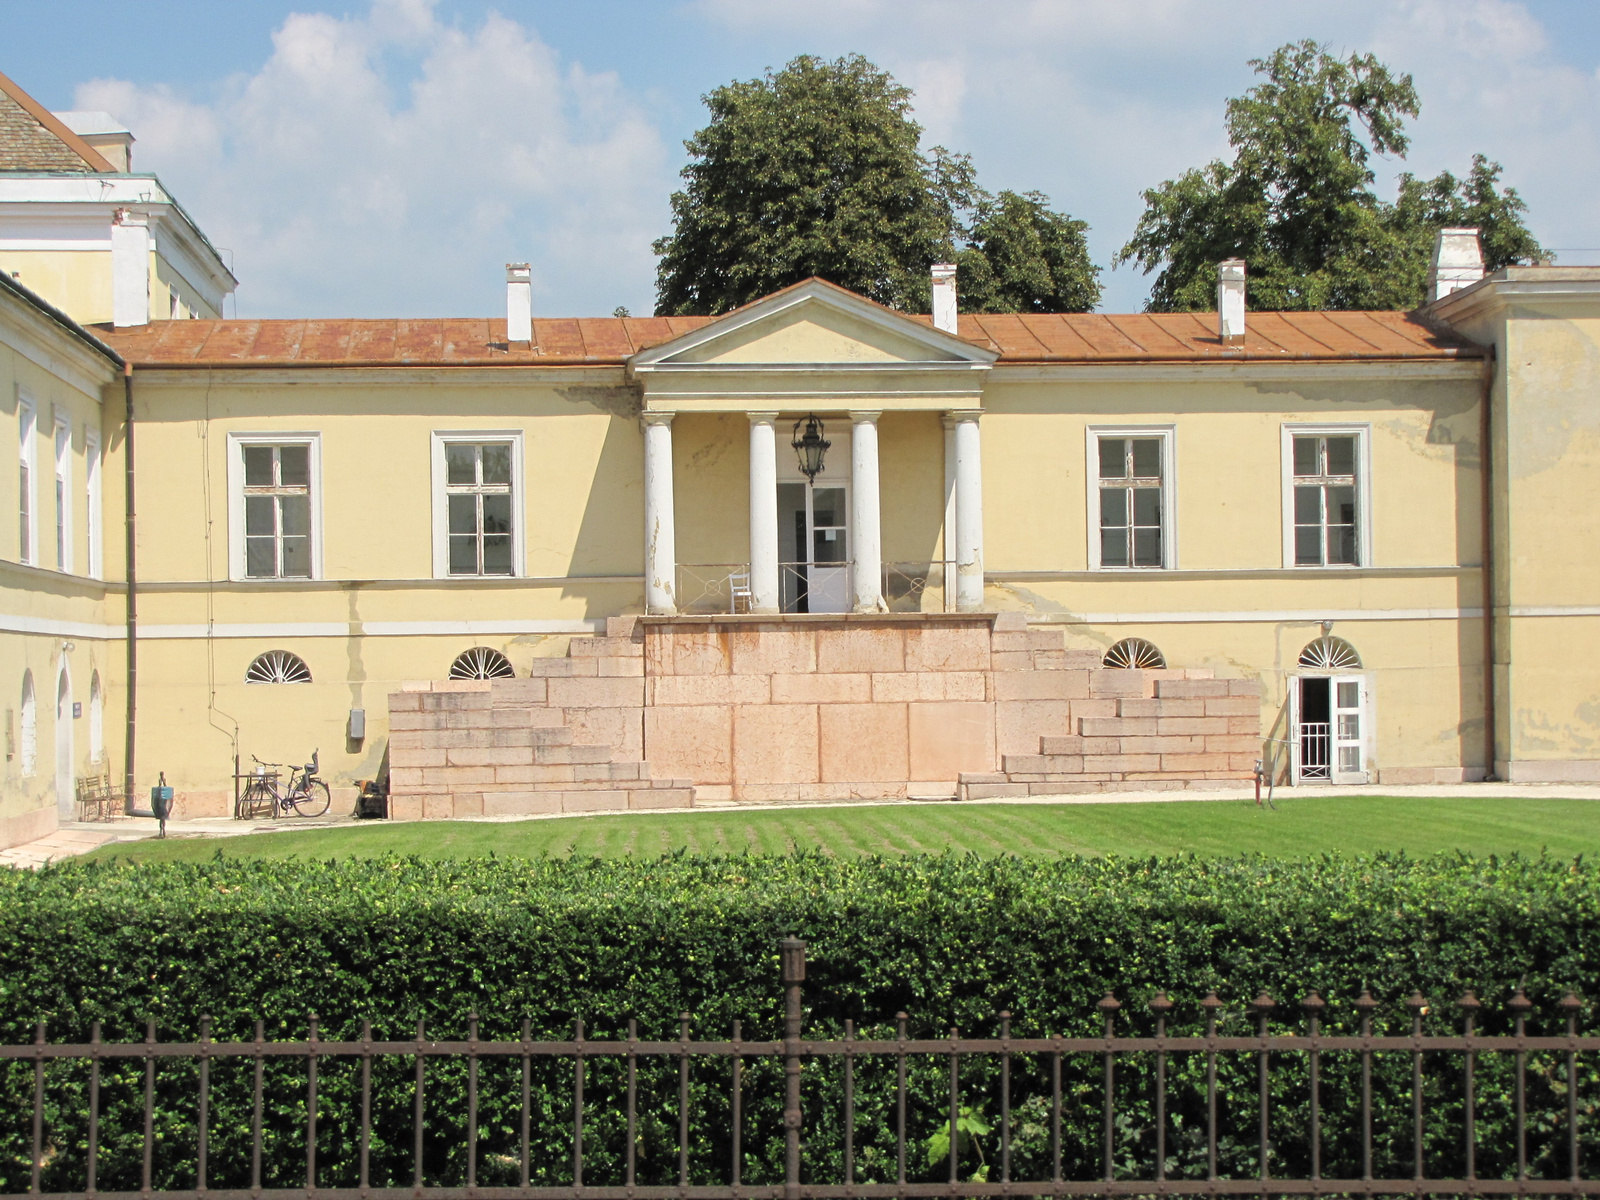 Magyarország, Csákvár, az Esterházy kastély, SzG3